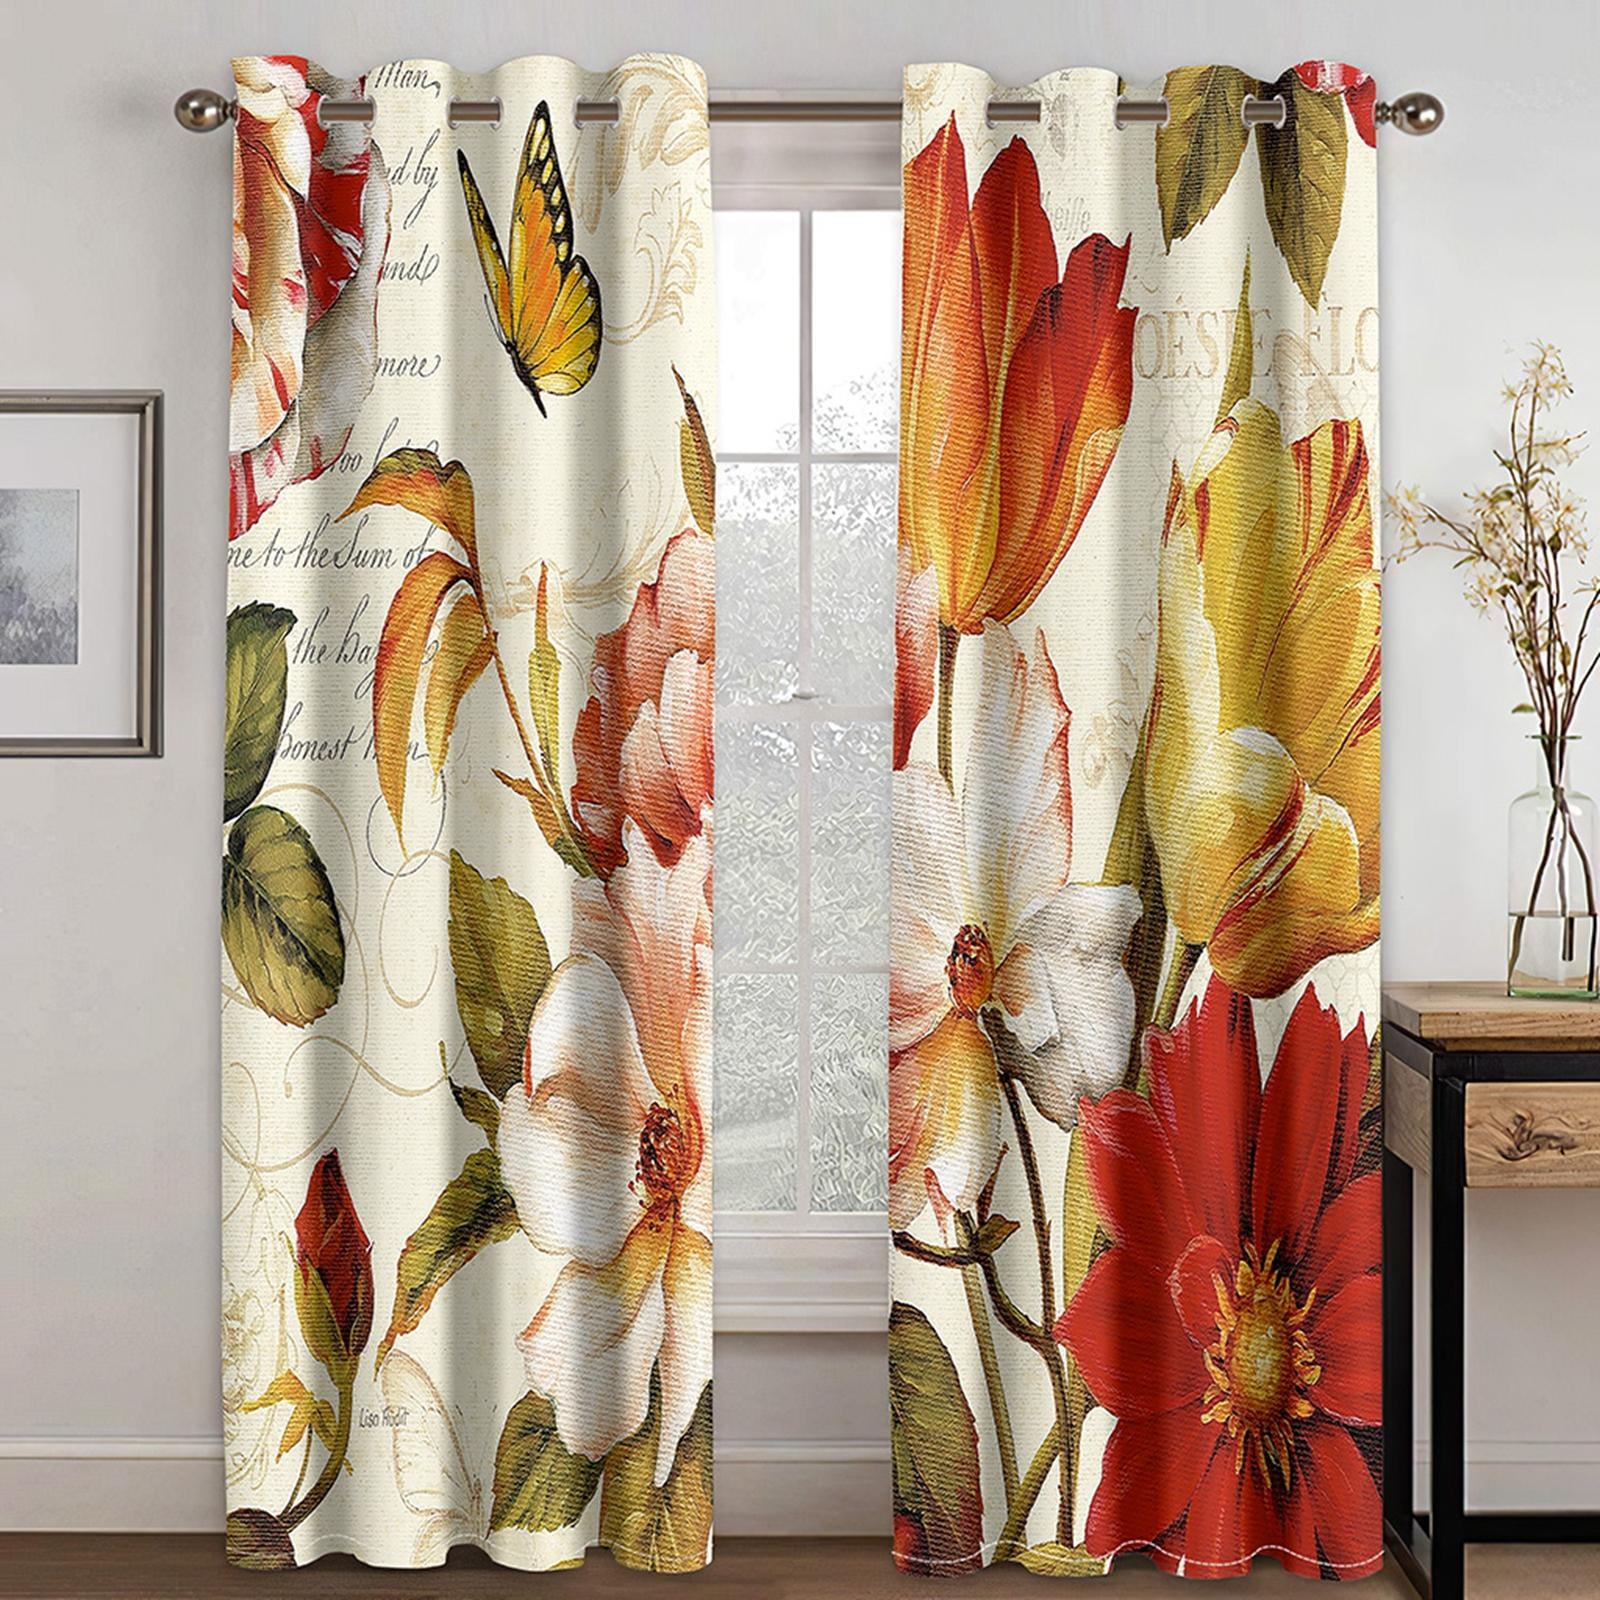 MagiDealMagiDeal Horses 71''x 71'' Bathroom Bath Fabric Shower Curtain with0 